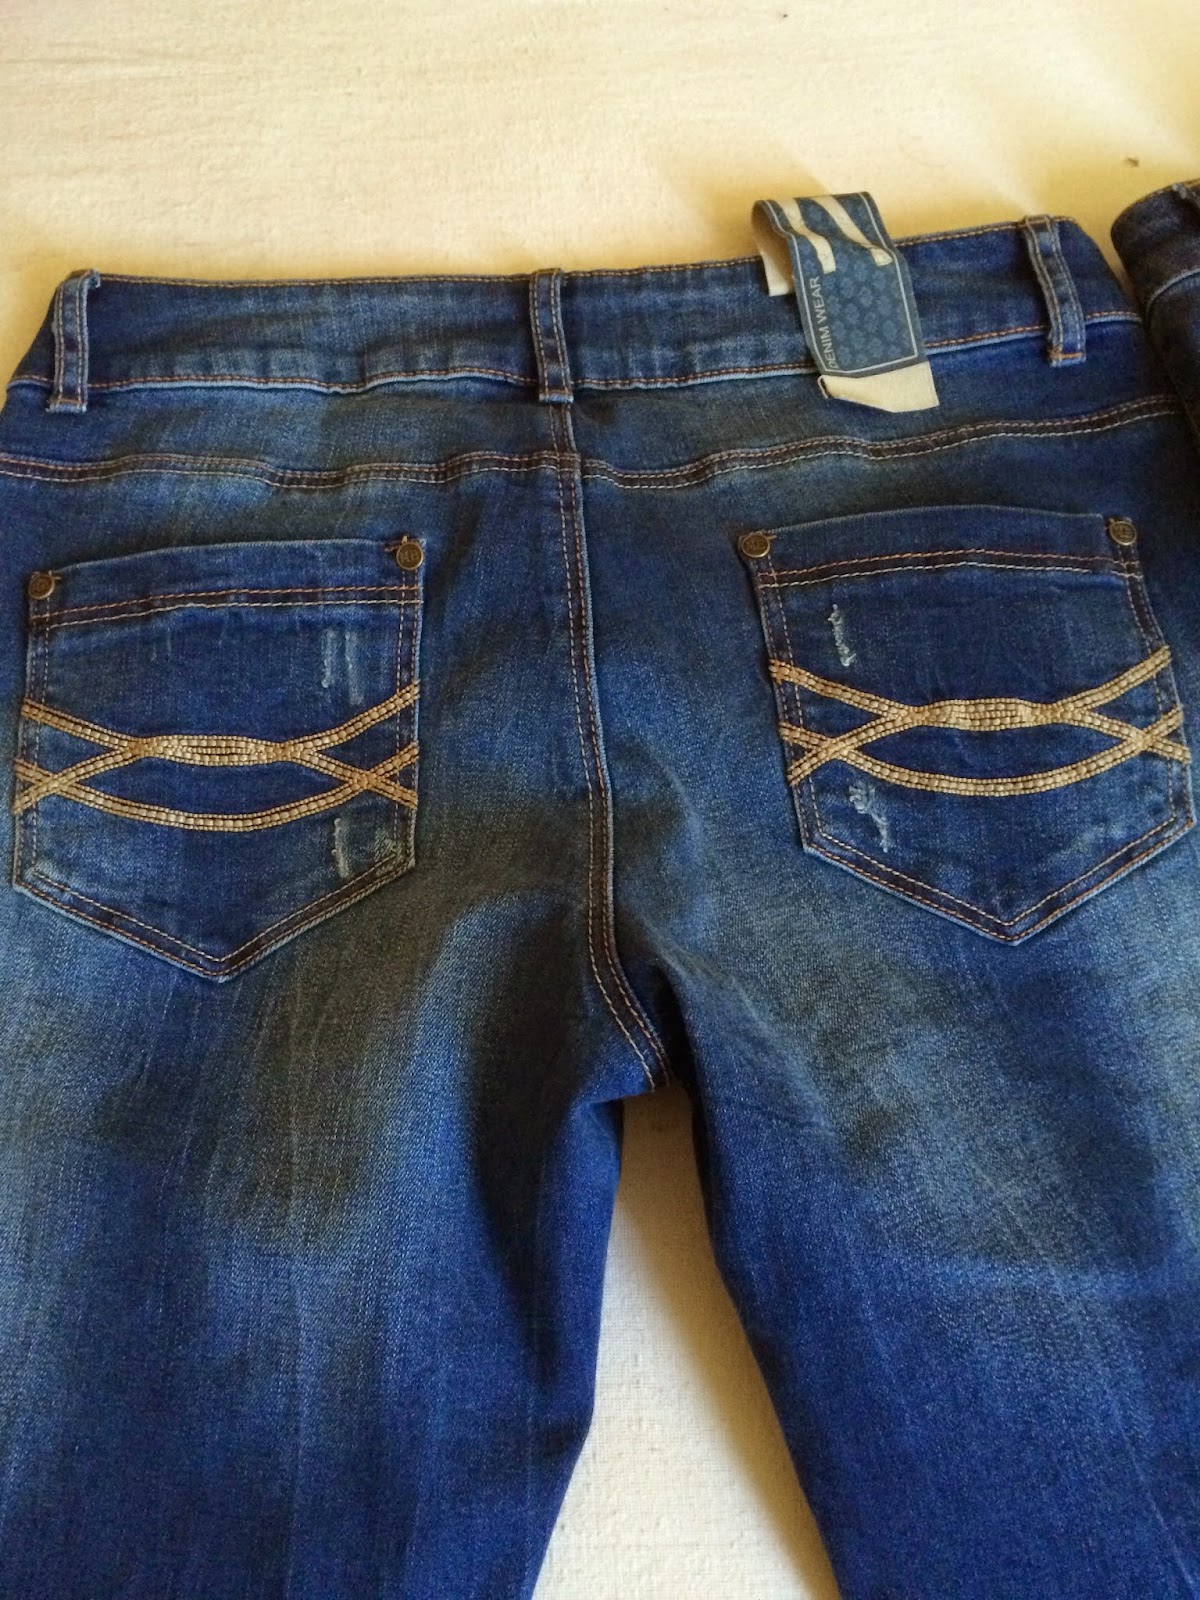 *Werbung* Shoptest Jeans Fritz 25